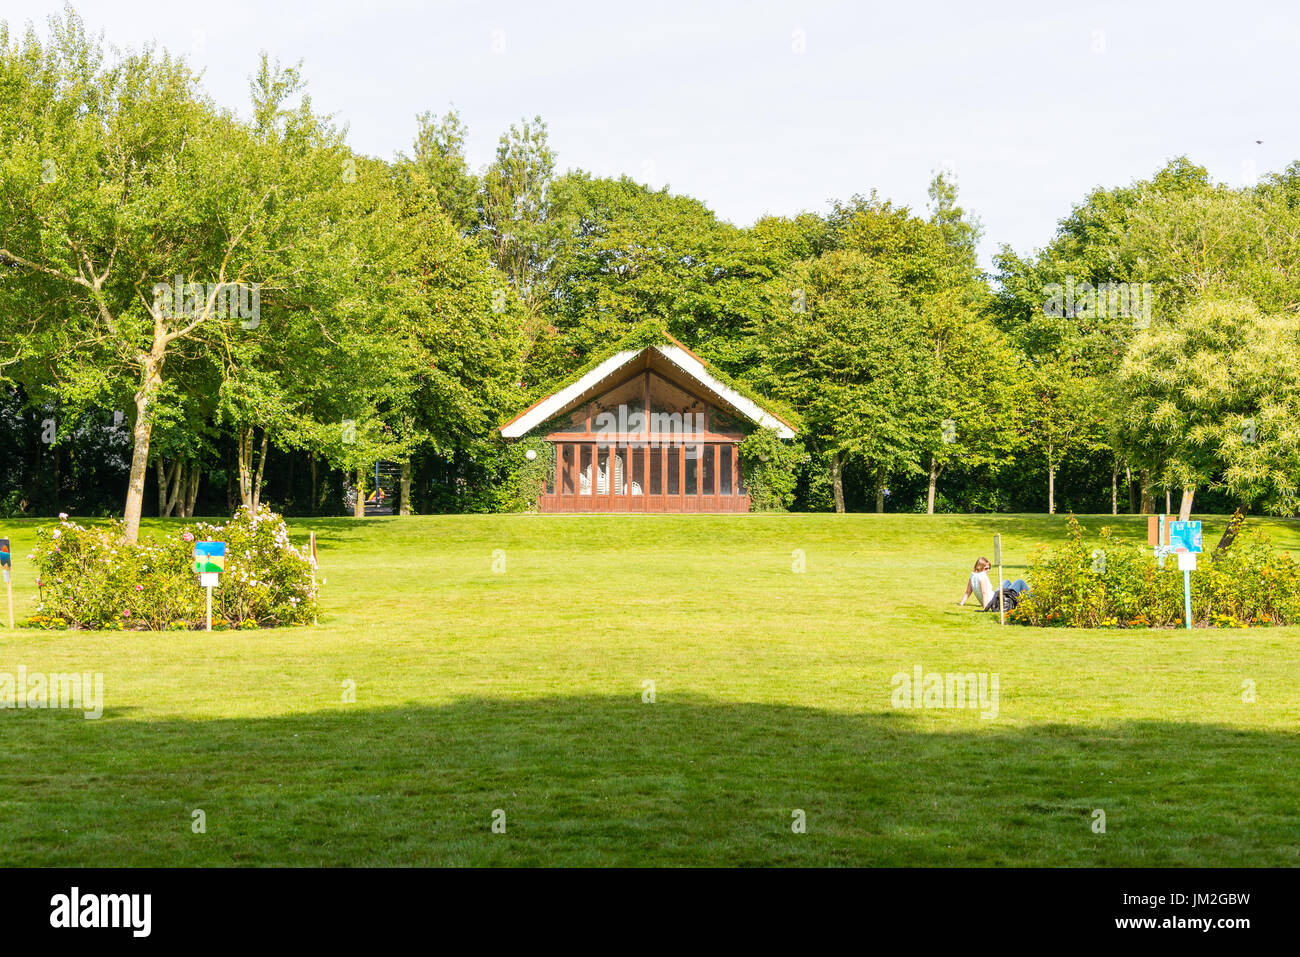 WANGEROOGE, Allemagne. 05 Juillet 2017 : vue sur la roseraie parc dans le centre de l'île wangeroog, l'un des sept de la Frise orientale allemande ilands Banque D'Images